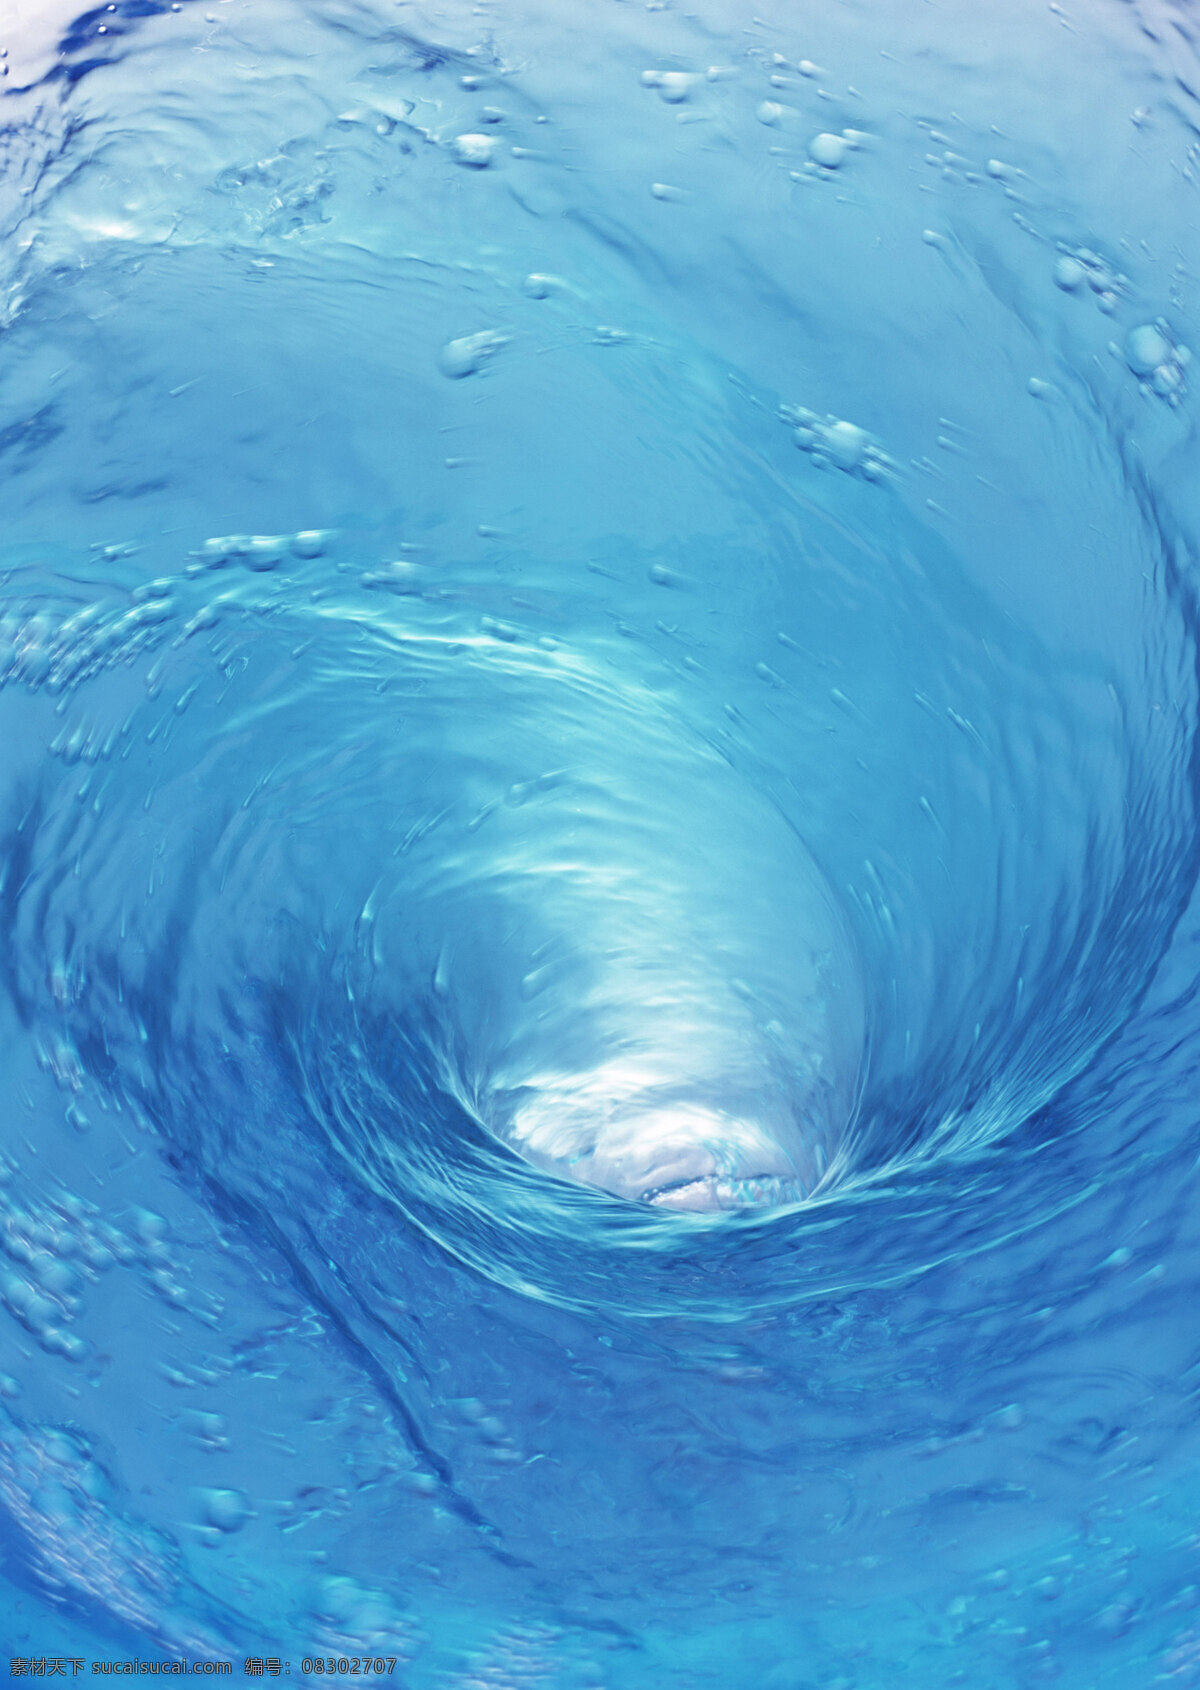 背景 高清图片 蓝色 山水风景 设计素材 摄影图库 水 纹 水纹 漩涡 搅拌 波纹水滴 自然景观 动感水流